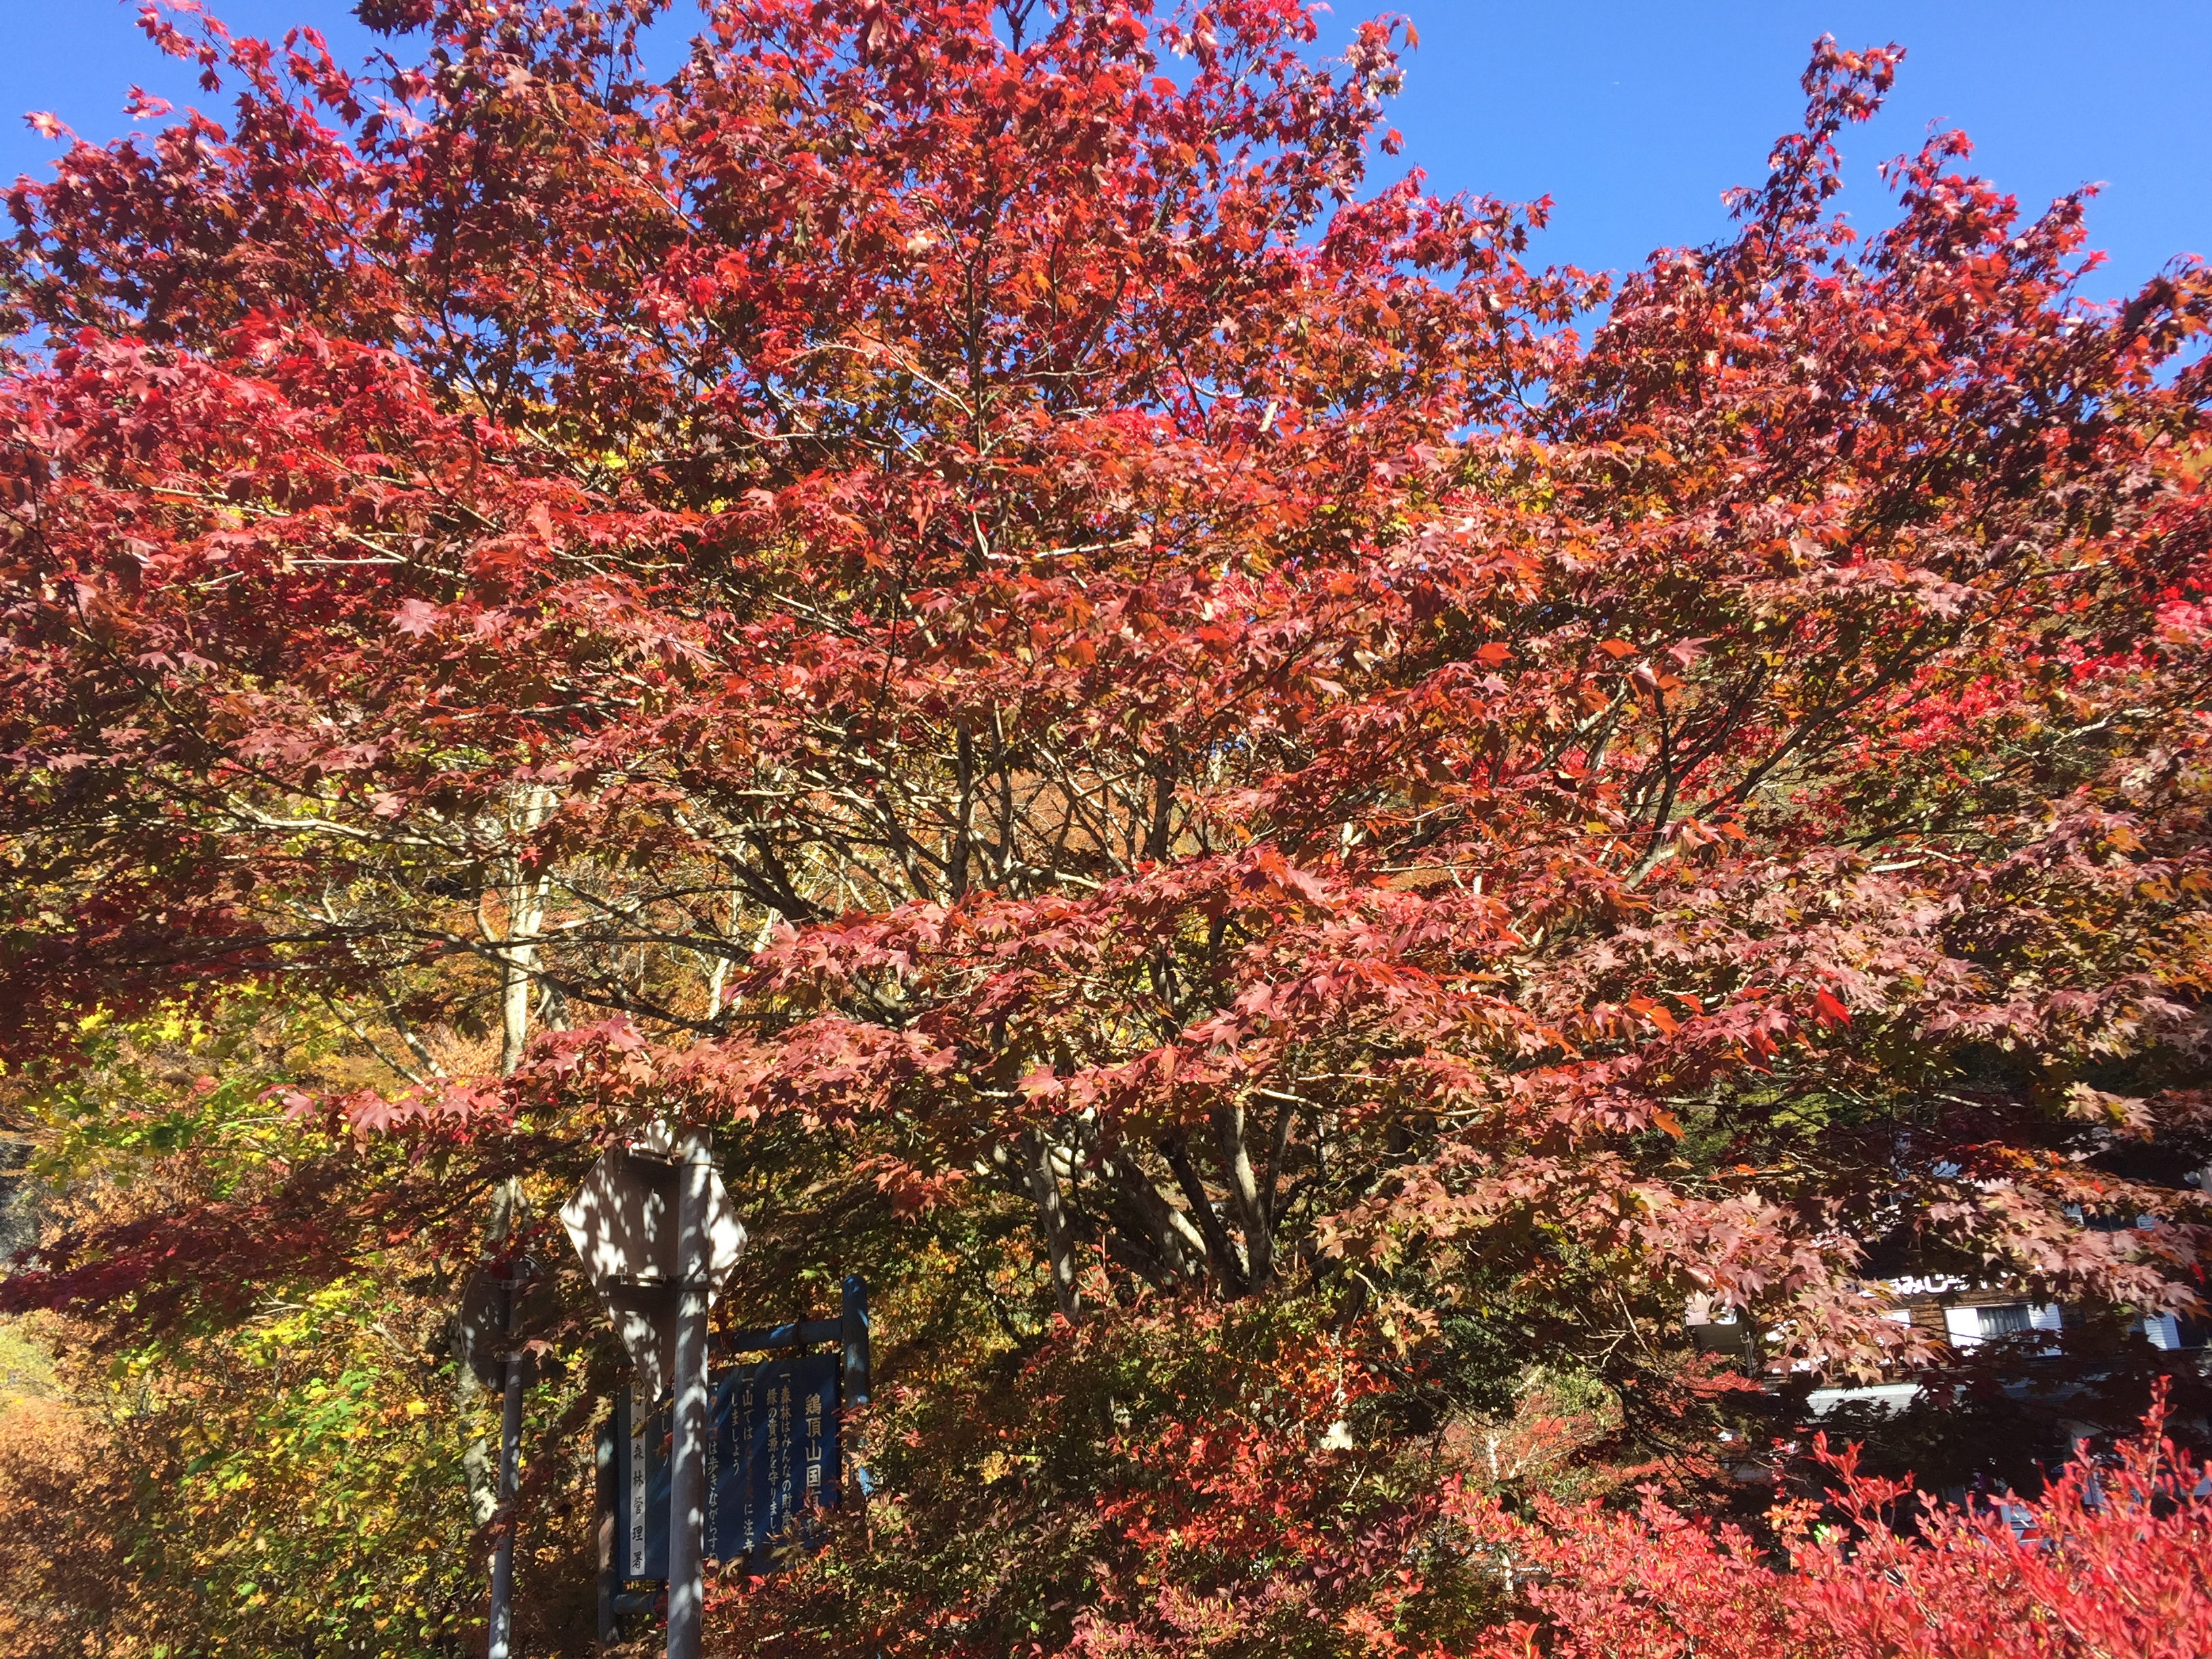 龍王峡の紅葉見ごろは11月上旬から下旬まで